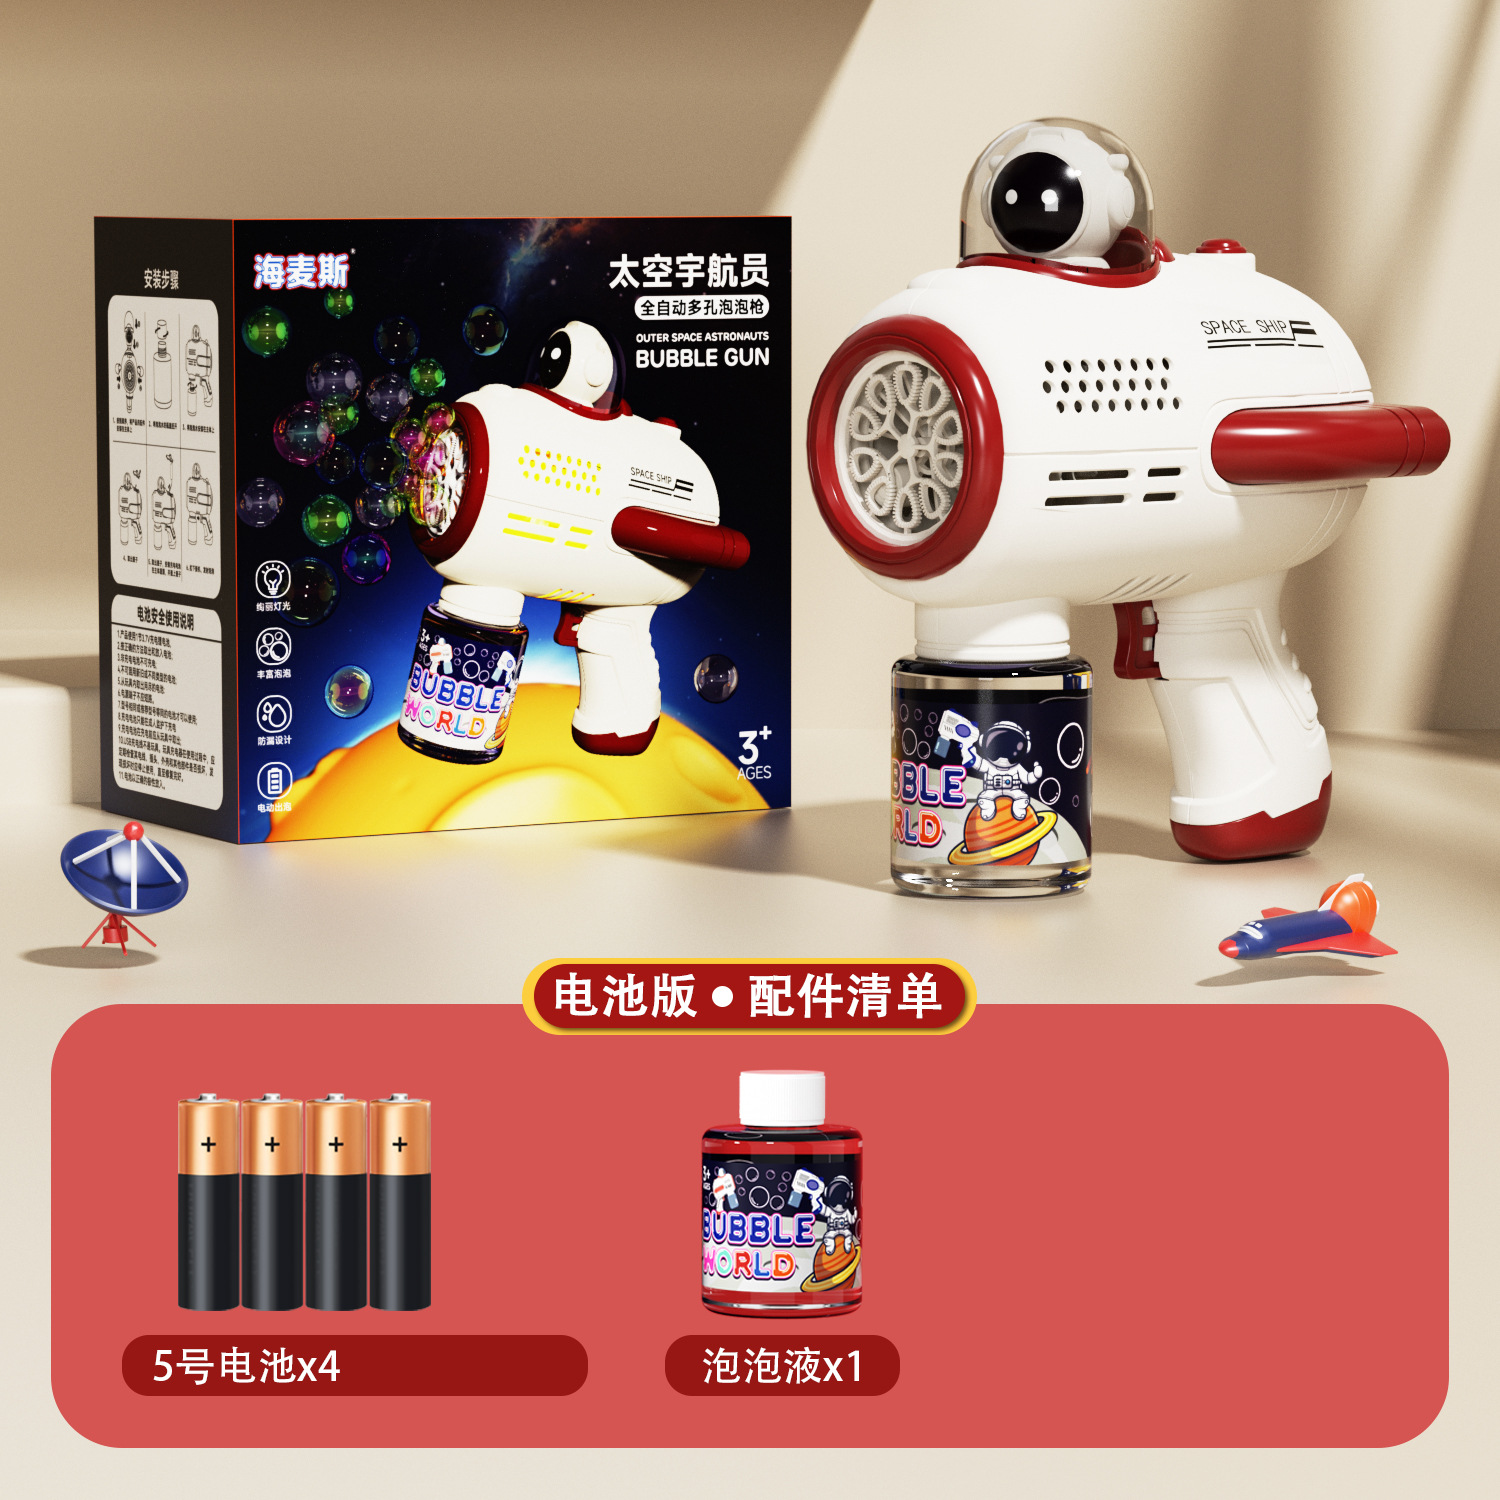 Internet Hot Astronaut Bubble Gun Spaceman Bubble Machine Children's Electric Toys Stall Wholesale Factory Direct Sales